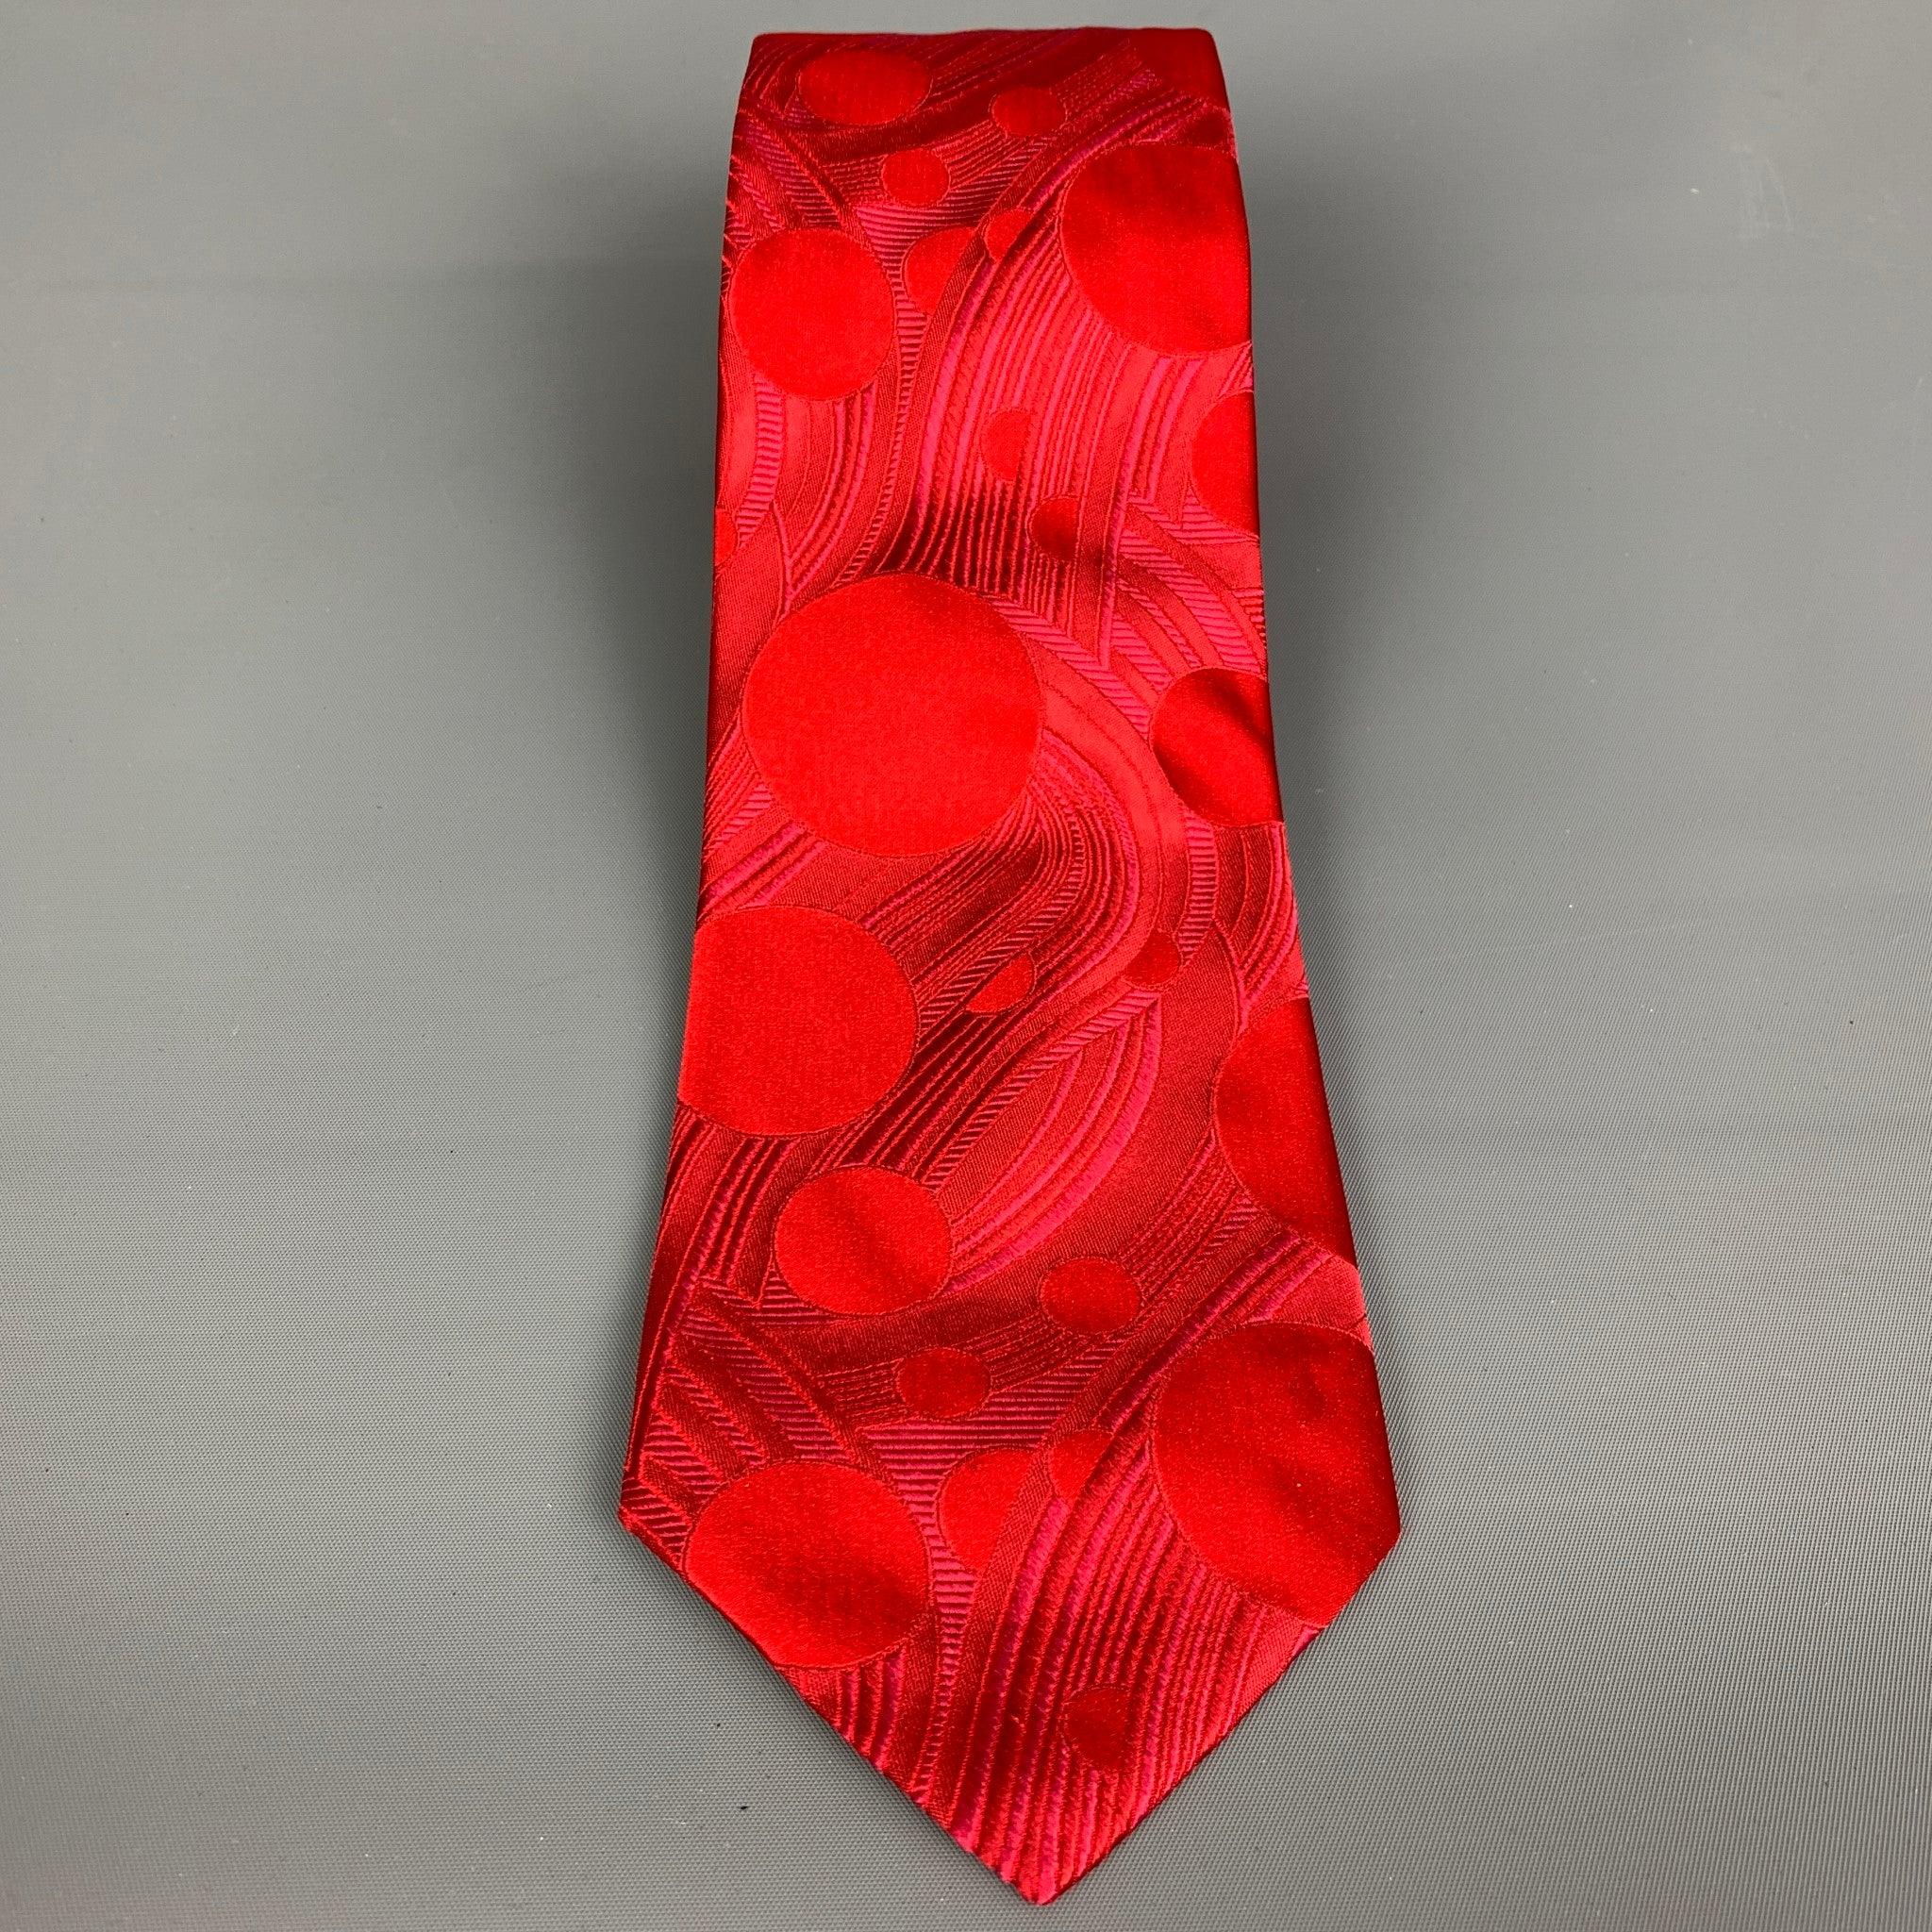 Die PAUL SMITH Krawatte ist aus rotem Seidenjacquard mit abstraktem Muster. Made in Italy. sehr guter gebrauchter Zustand. Geringe Spuren Breite: 4 Zoll Länge: 62 Zoll  

  
  
 
Sui Generis-Referenz: 103976
Kategorie: Krawatte
Mehr Details
   